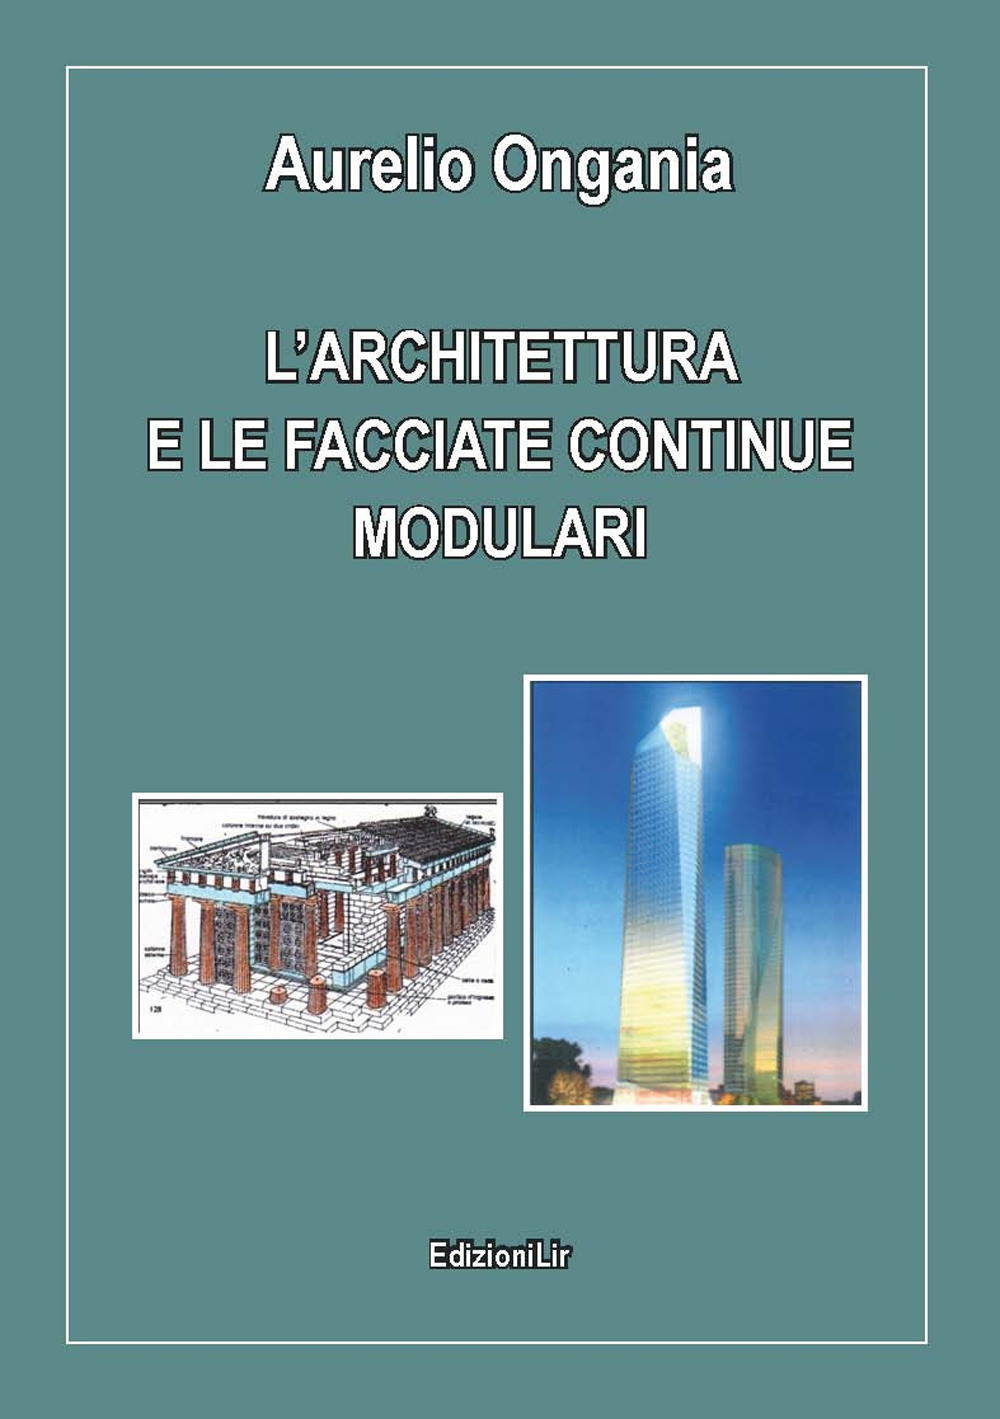 L'architettura e le facciate continue modulari